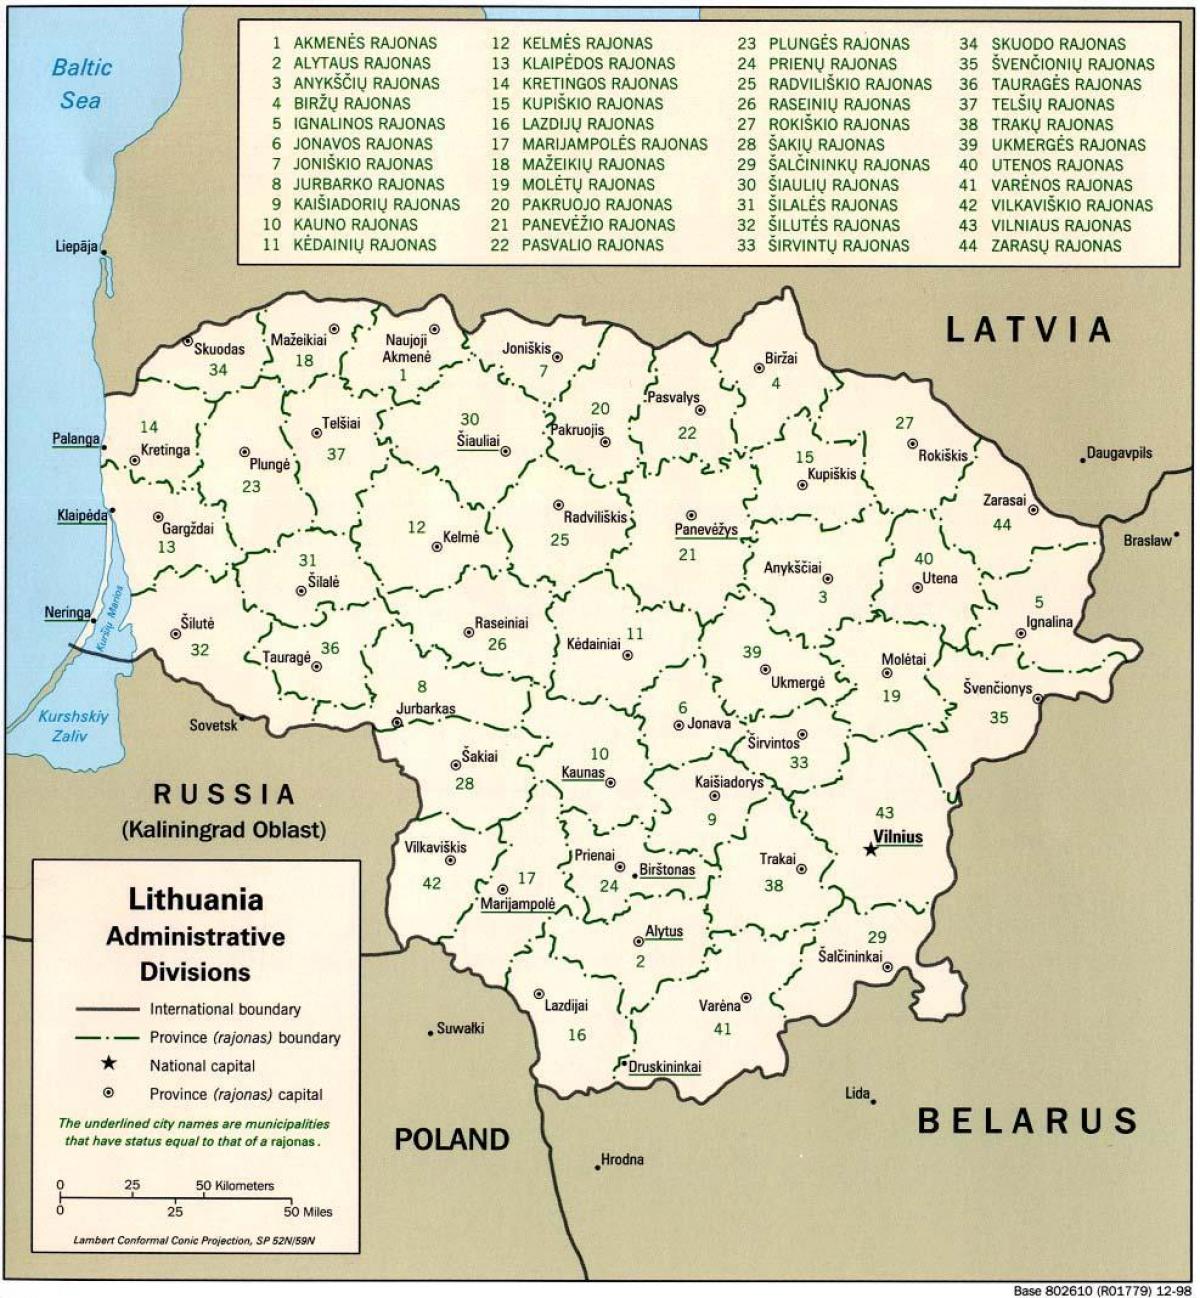 नक्शे के मानचित्र के साथ लिथुआनिया के शहरों